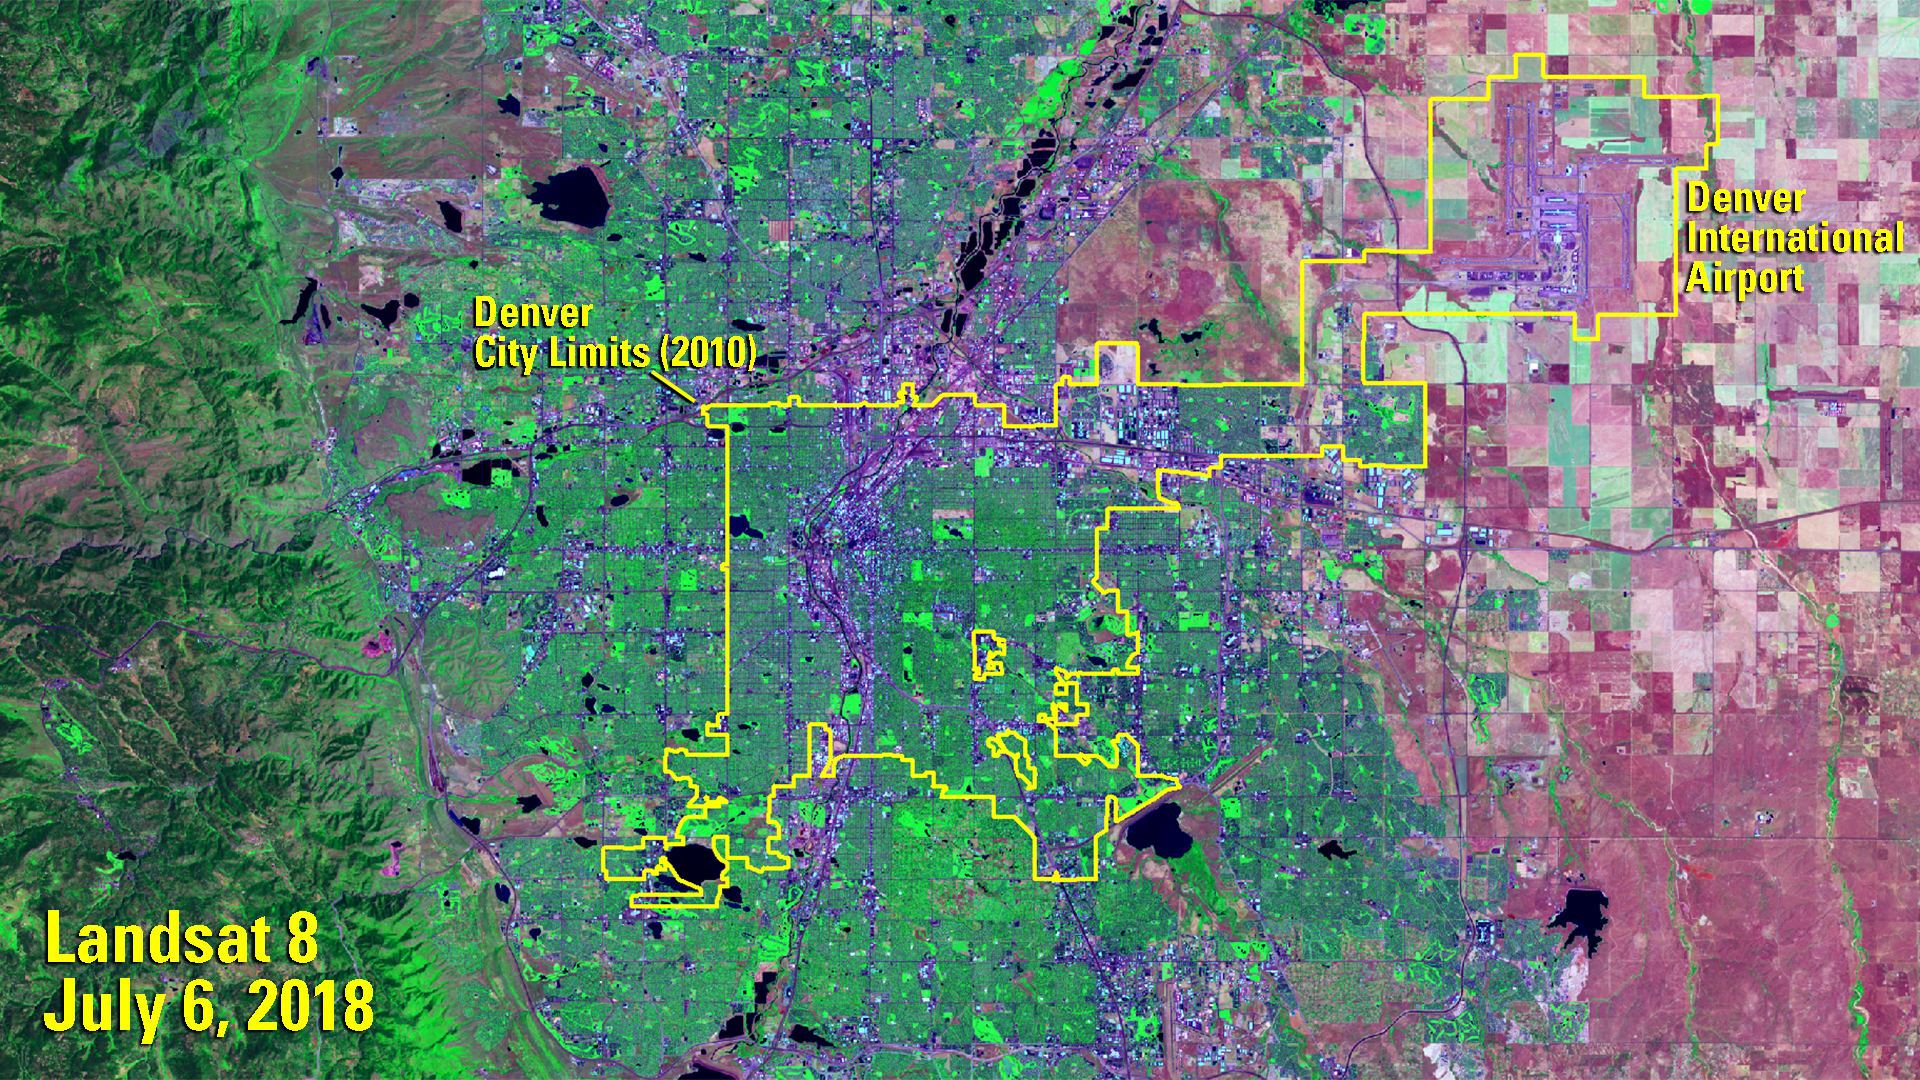 Landsat image of Denver - July 6, 2018